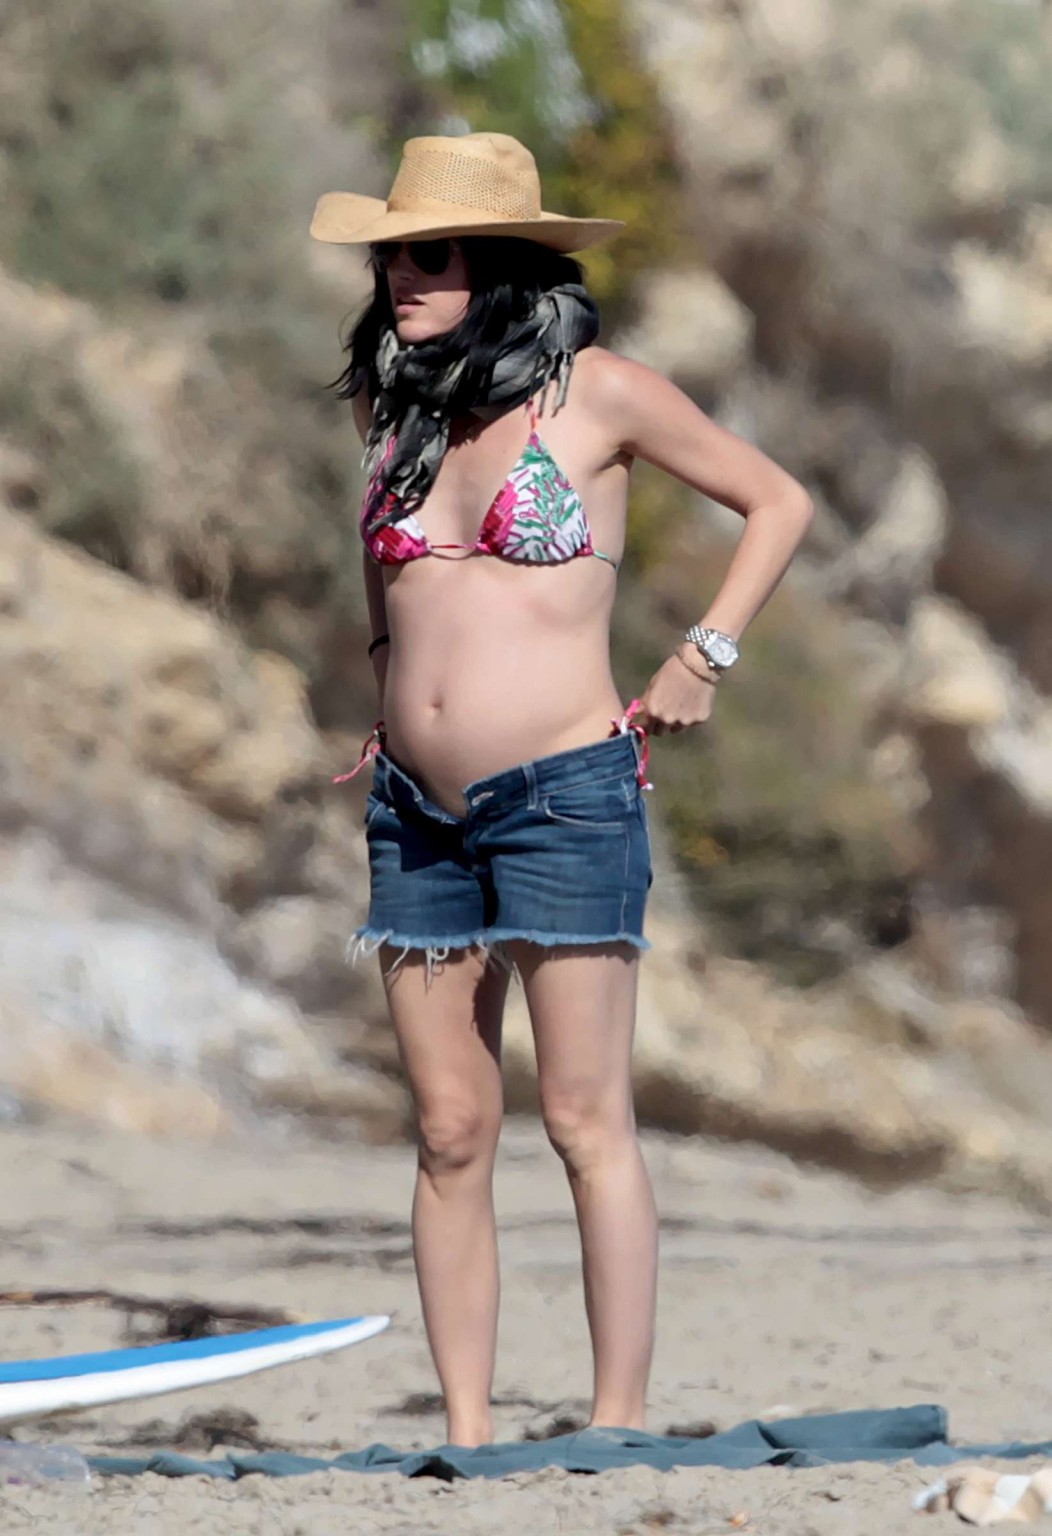 Selma Blair pregnant wearing bikini at the beach in Malibu #75318140